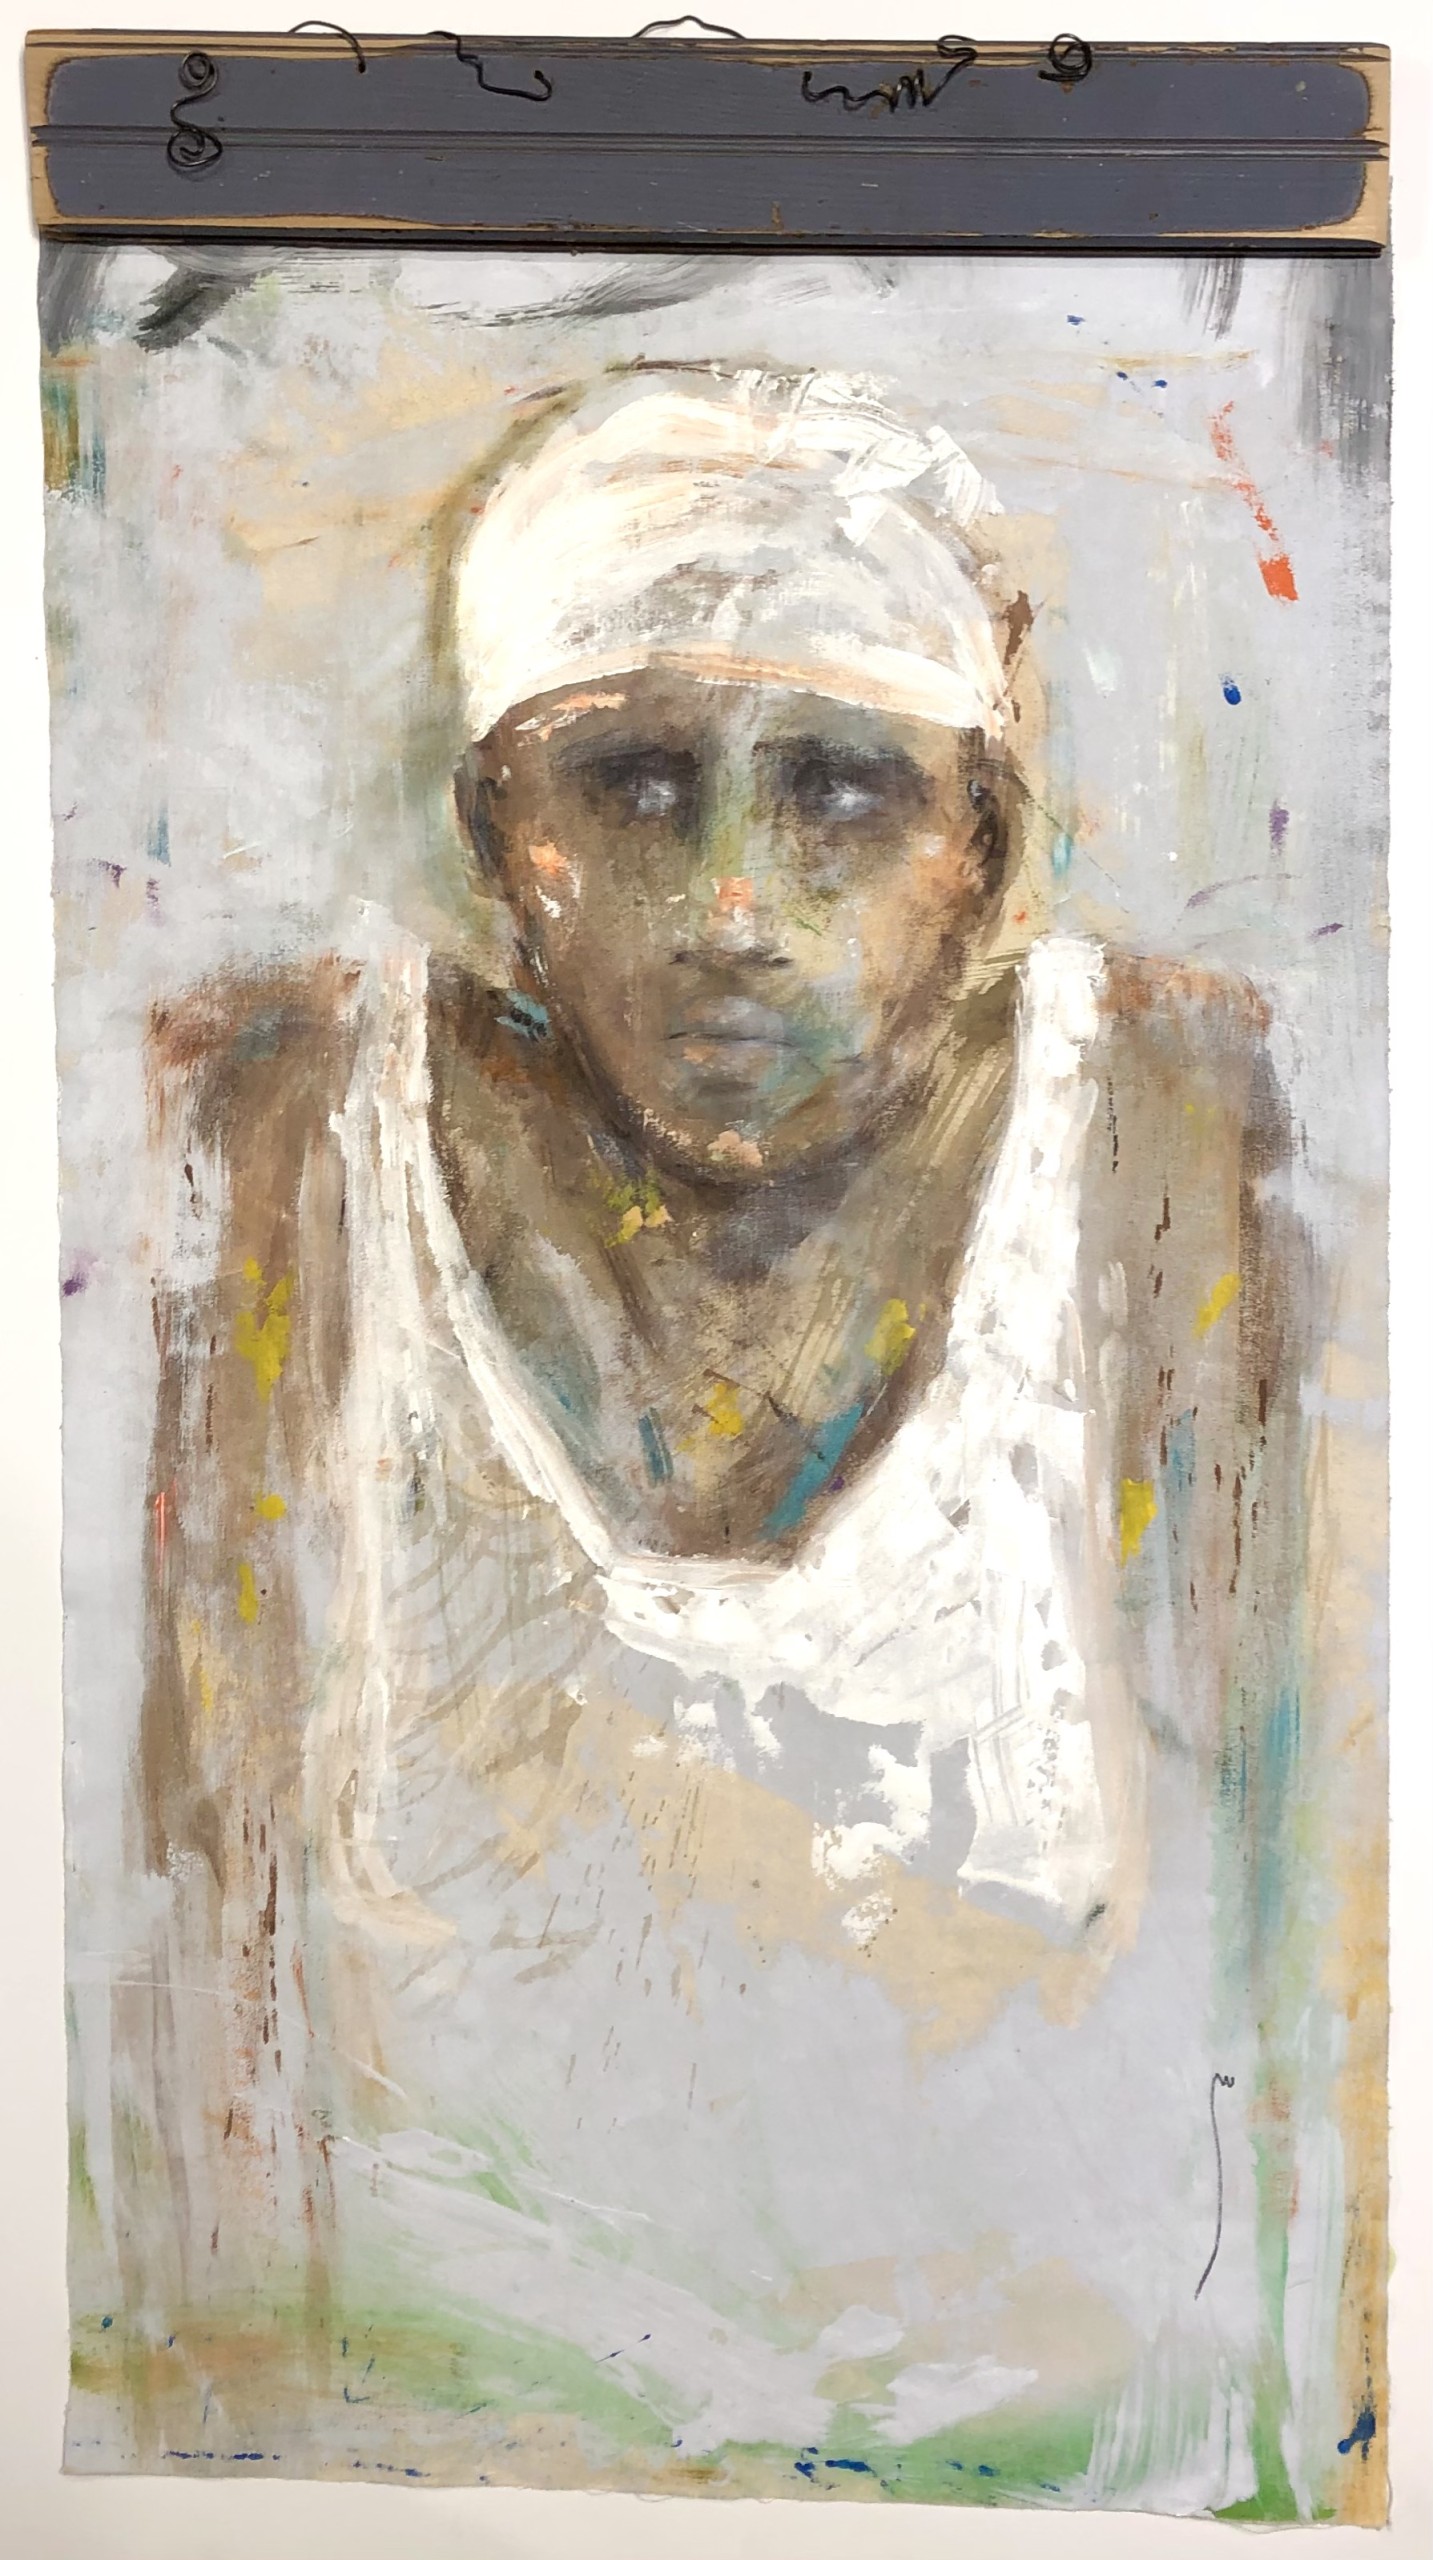 Jocelyn K Woodson, “Woman In White”, Acrylic on canvas